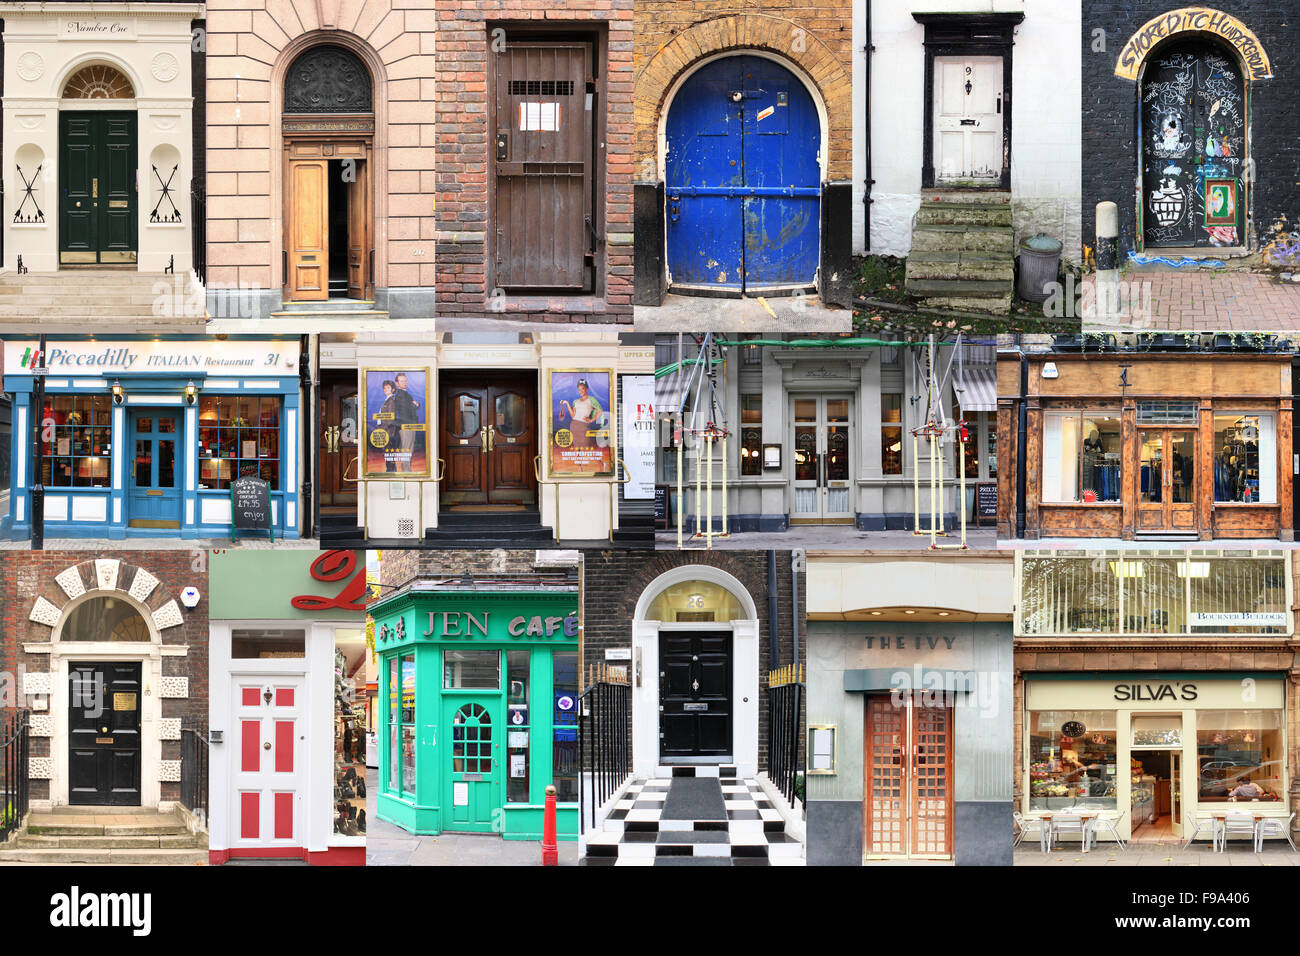 Gedeeltelijk Vleien Productief A montage of sixteen English doorways Stock Photo - Alamy